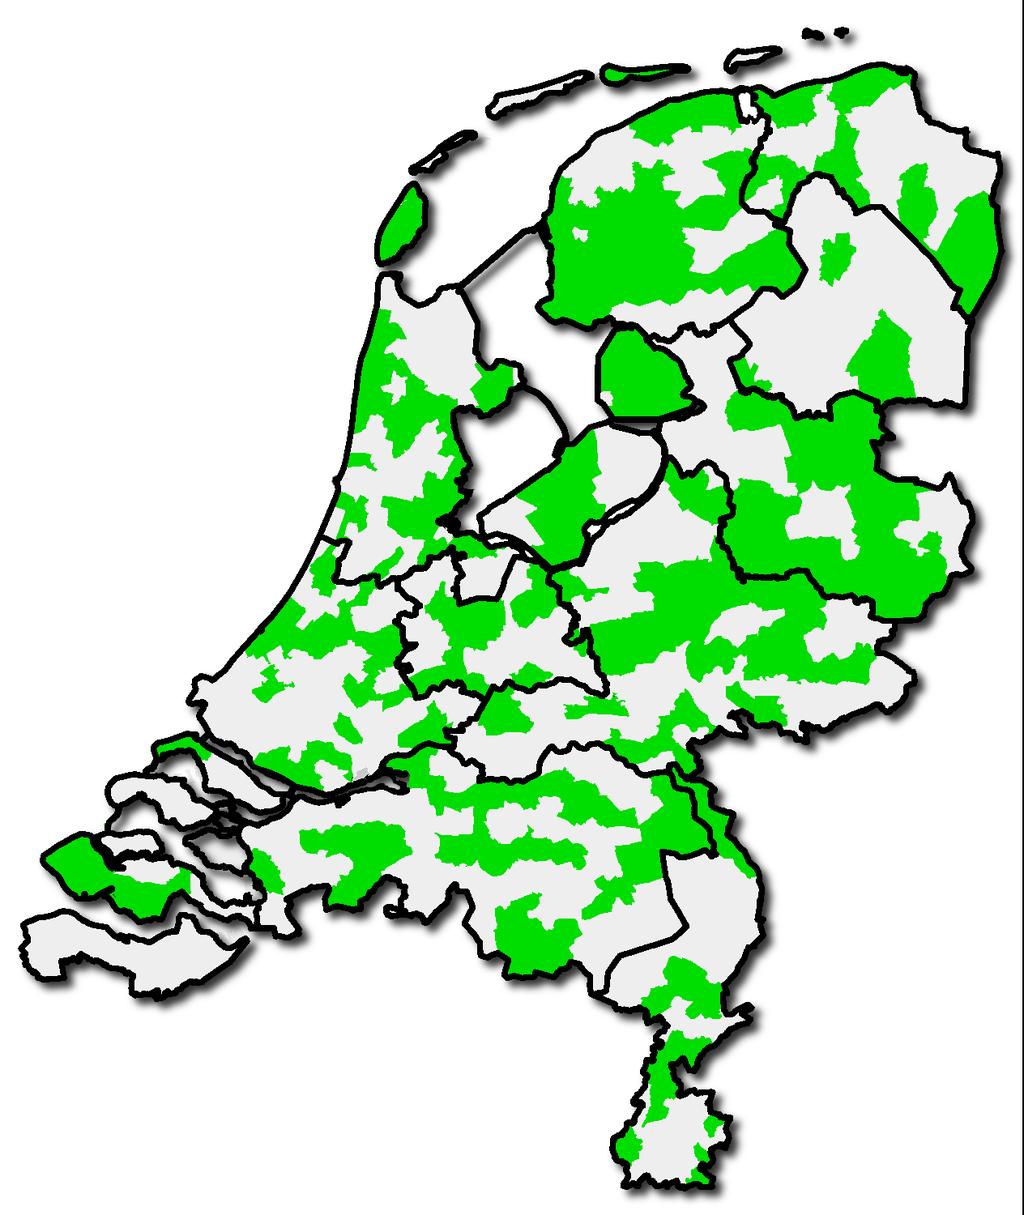 Respons Half november hadden 182 gemeenten de vragenlijst ingevuld, een respons van 41%. Figuur 1 en tabel 1 laten de verdeling zien van de respons over Nederland.